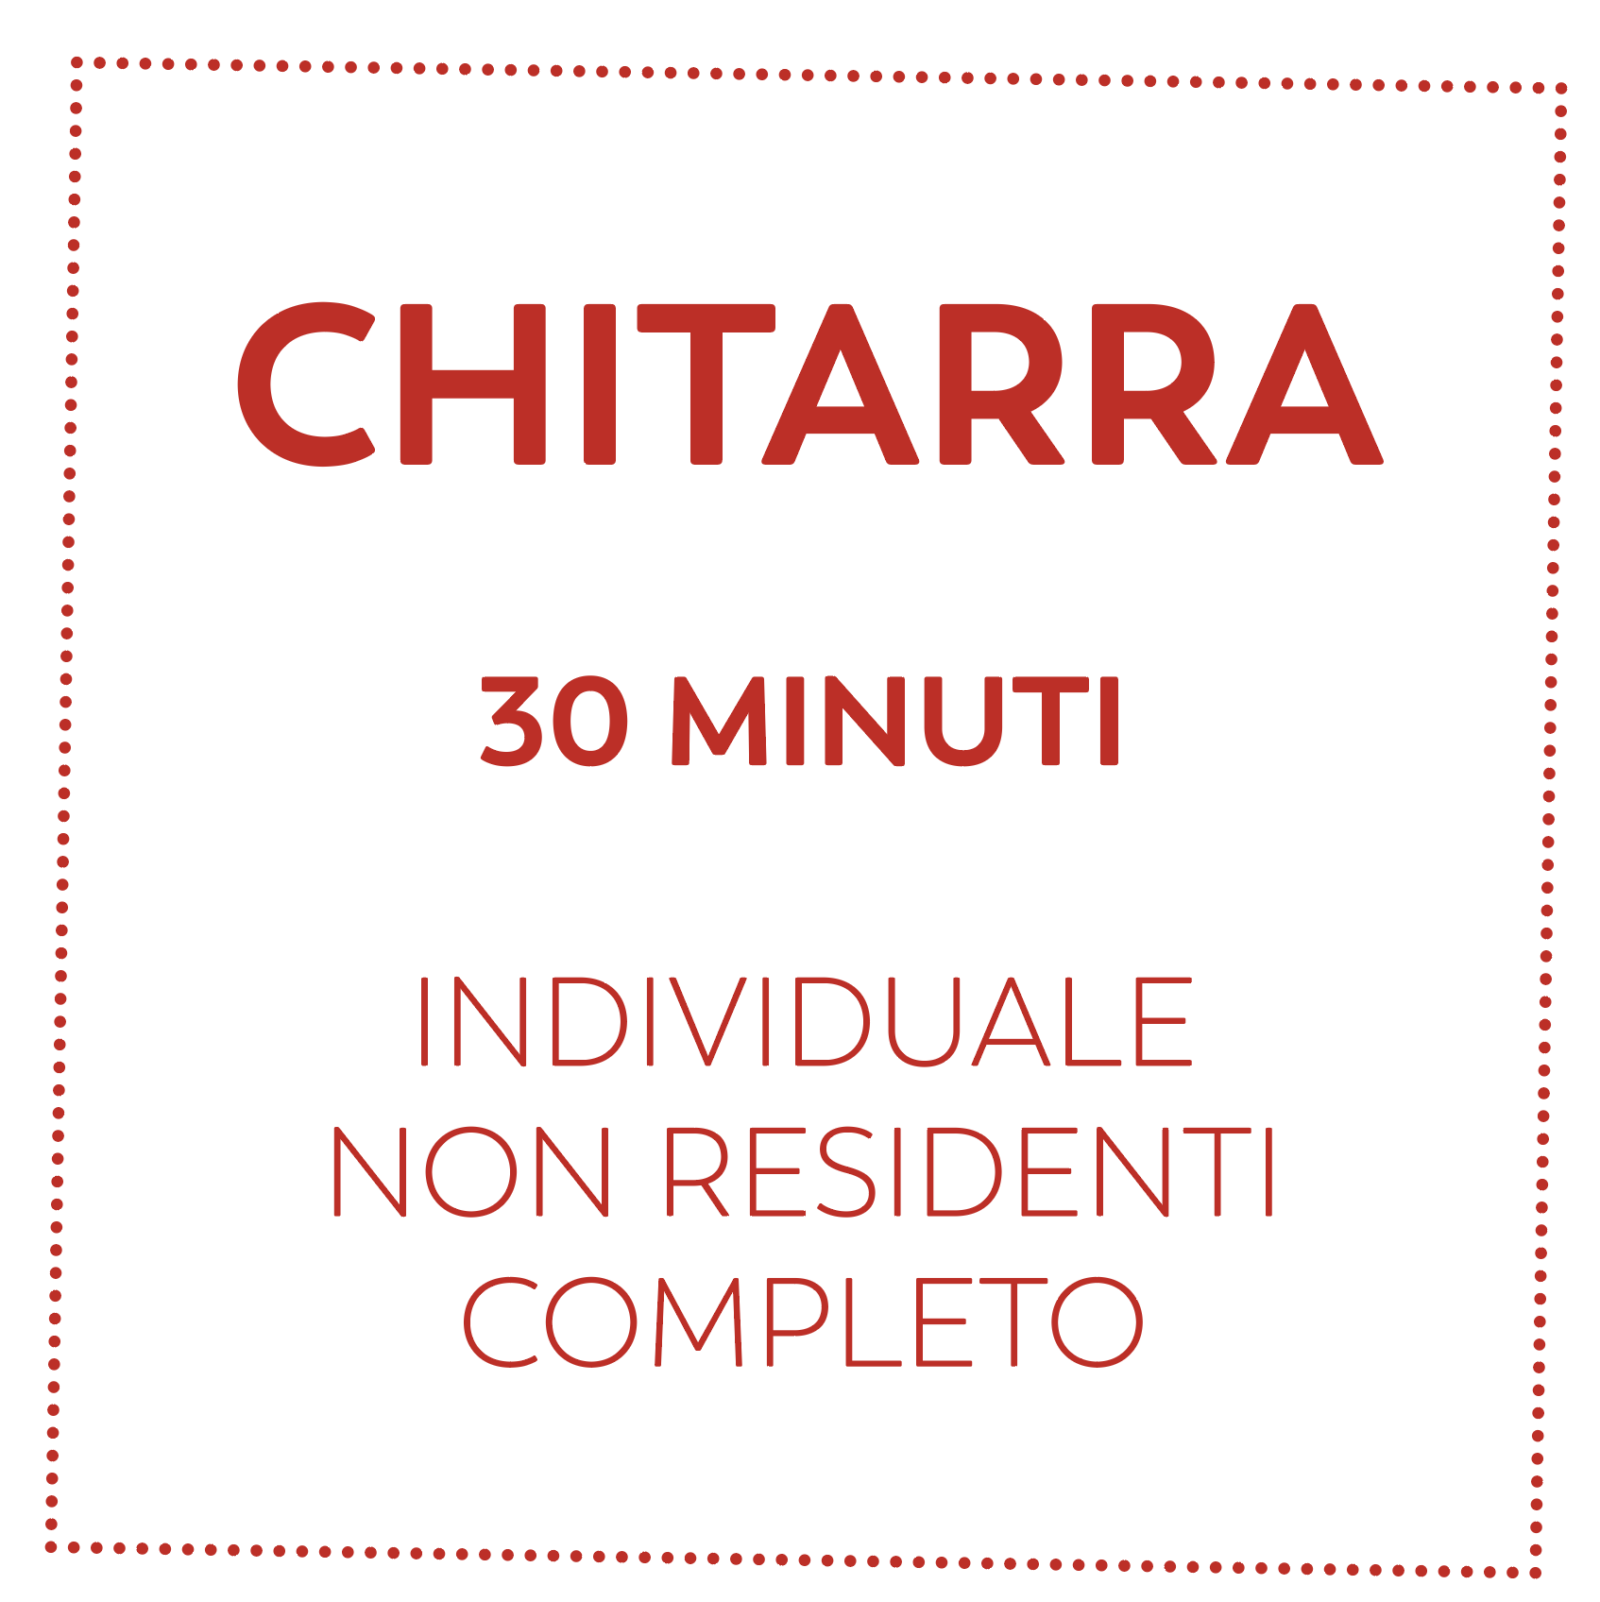 CHITARRA 30 MIN - NON RESIDENTI - COMPLETO